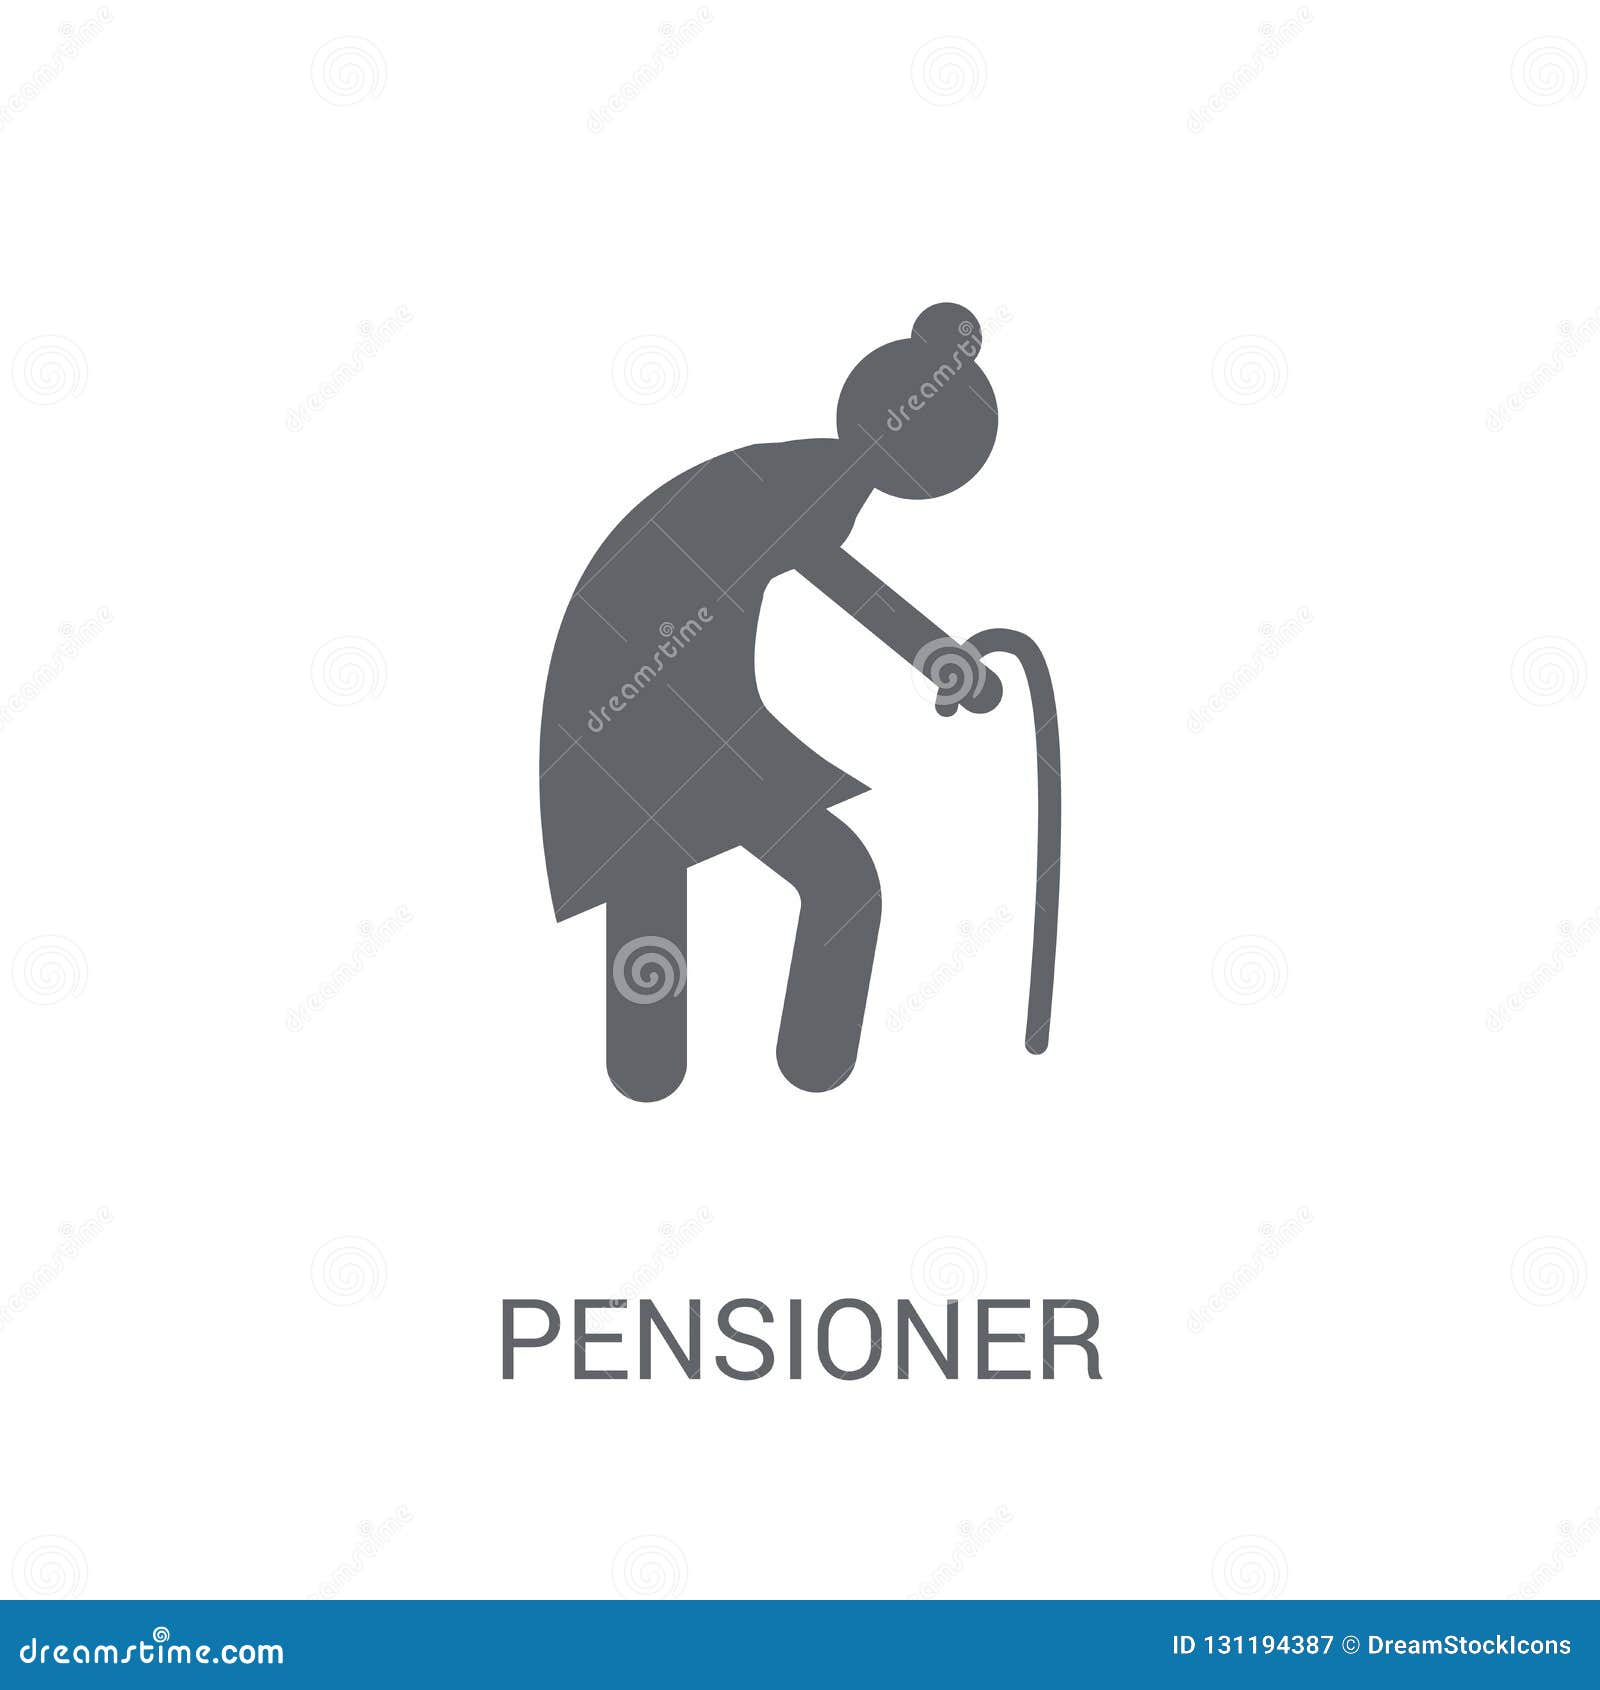 pensioner